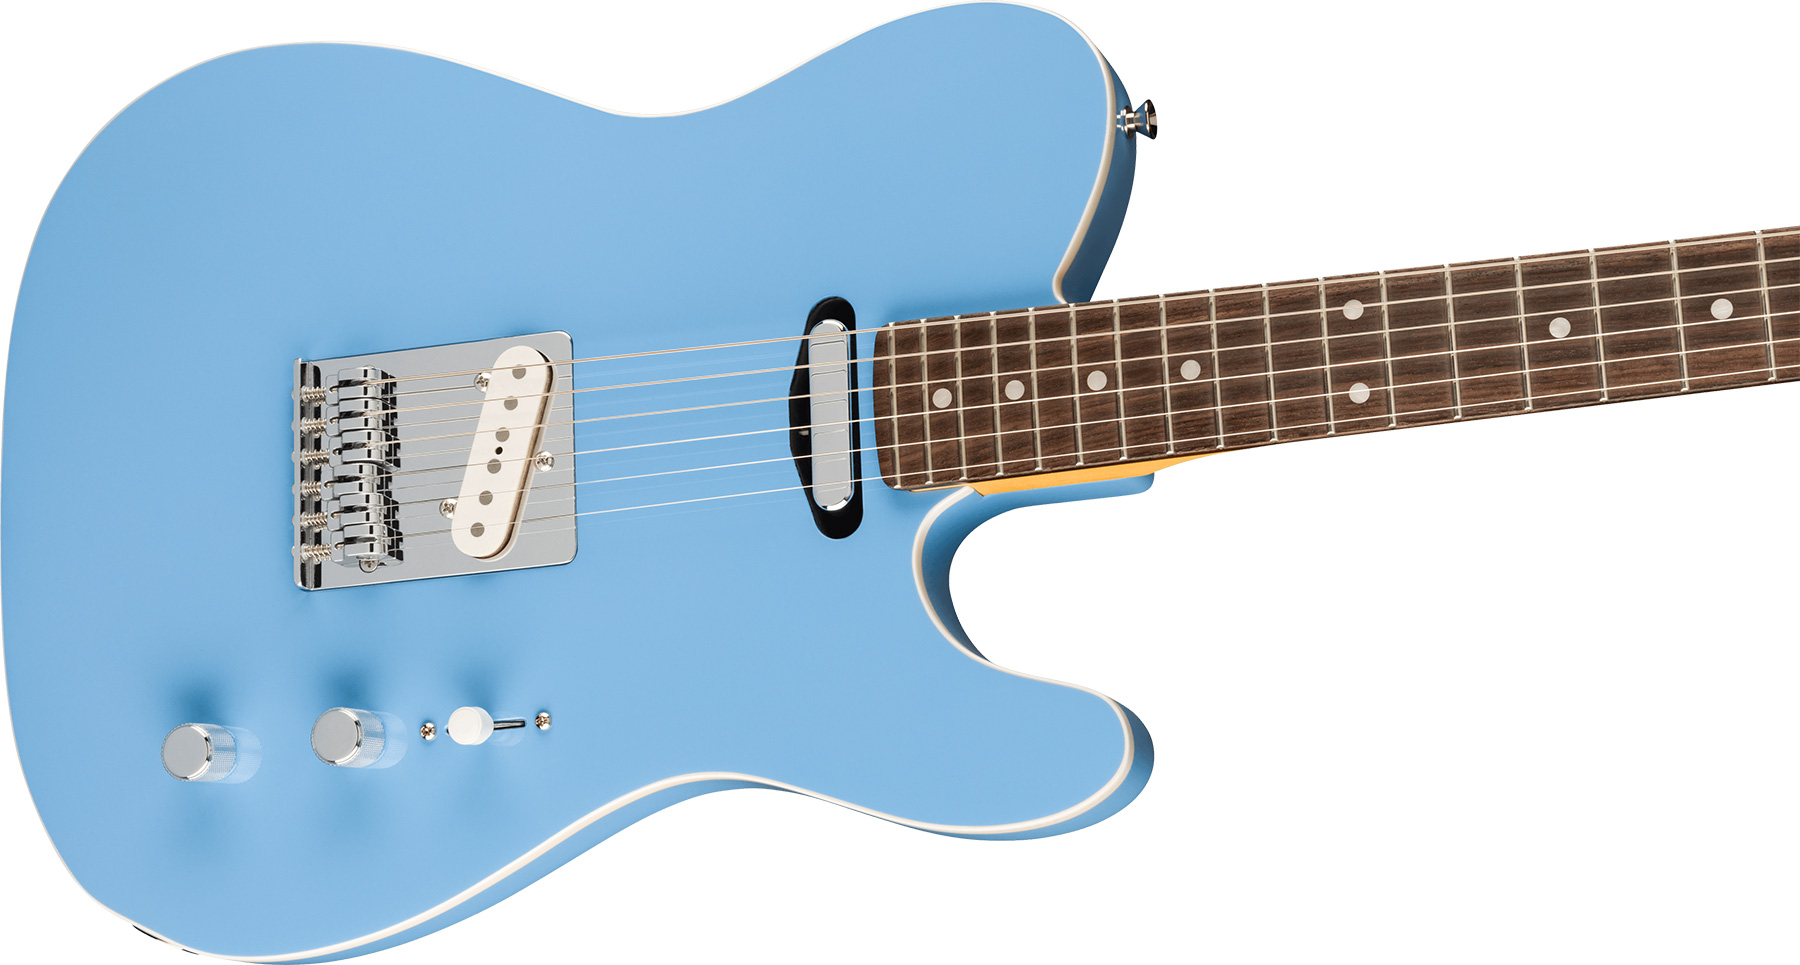 Fender Tele Aerodyne Special Jap 2s Ht Rw - California Blue - Guitarra eléctrica con forma de tel - Variation 2